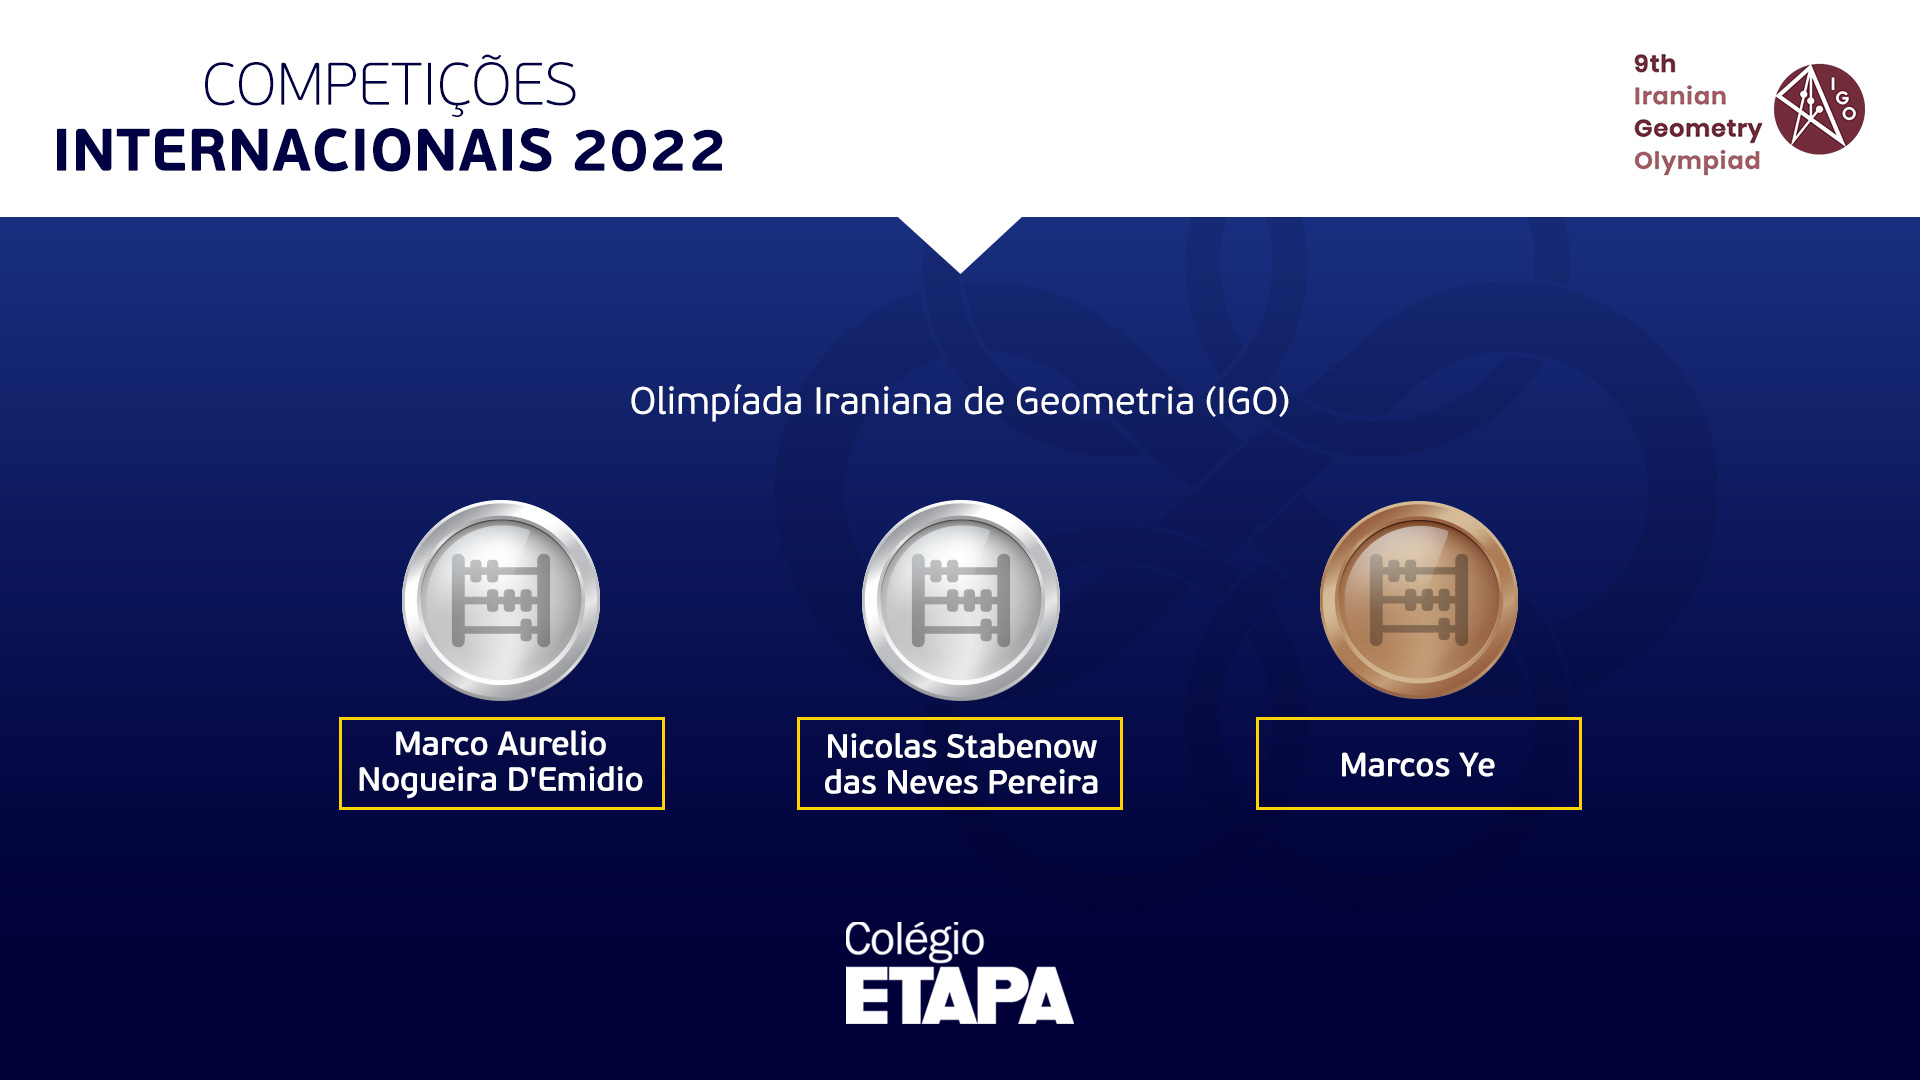 Três alunos do Colégio Etapa conquistaram medalhas na IGO 2022, que contou com a participação de mais de 8 mil competidores.